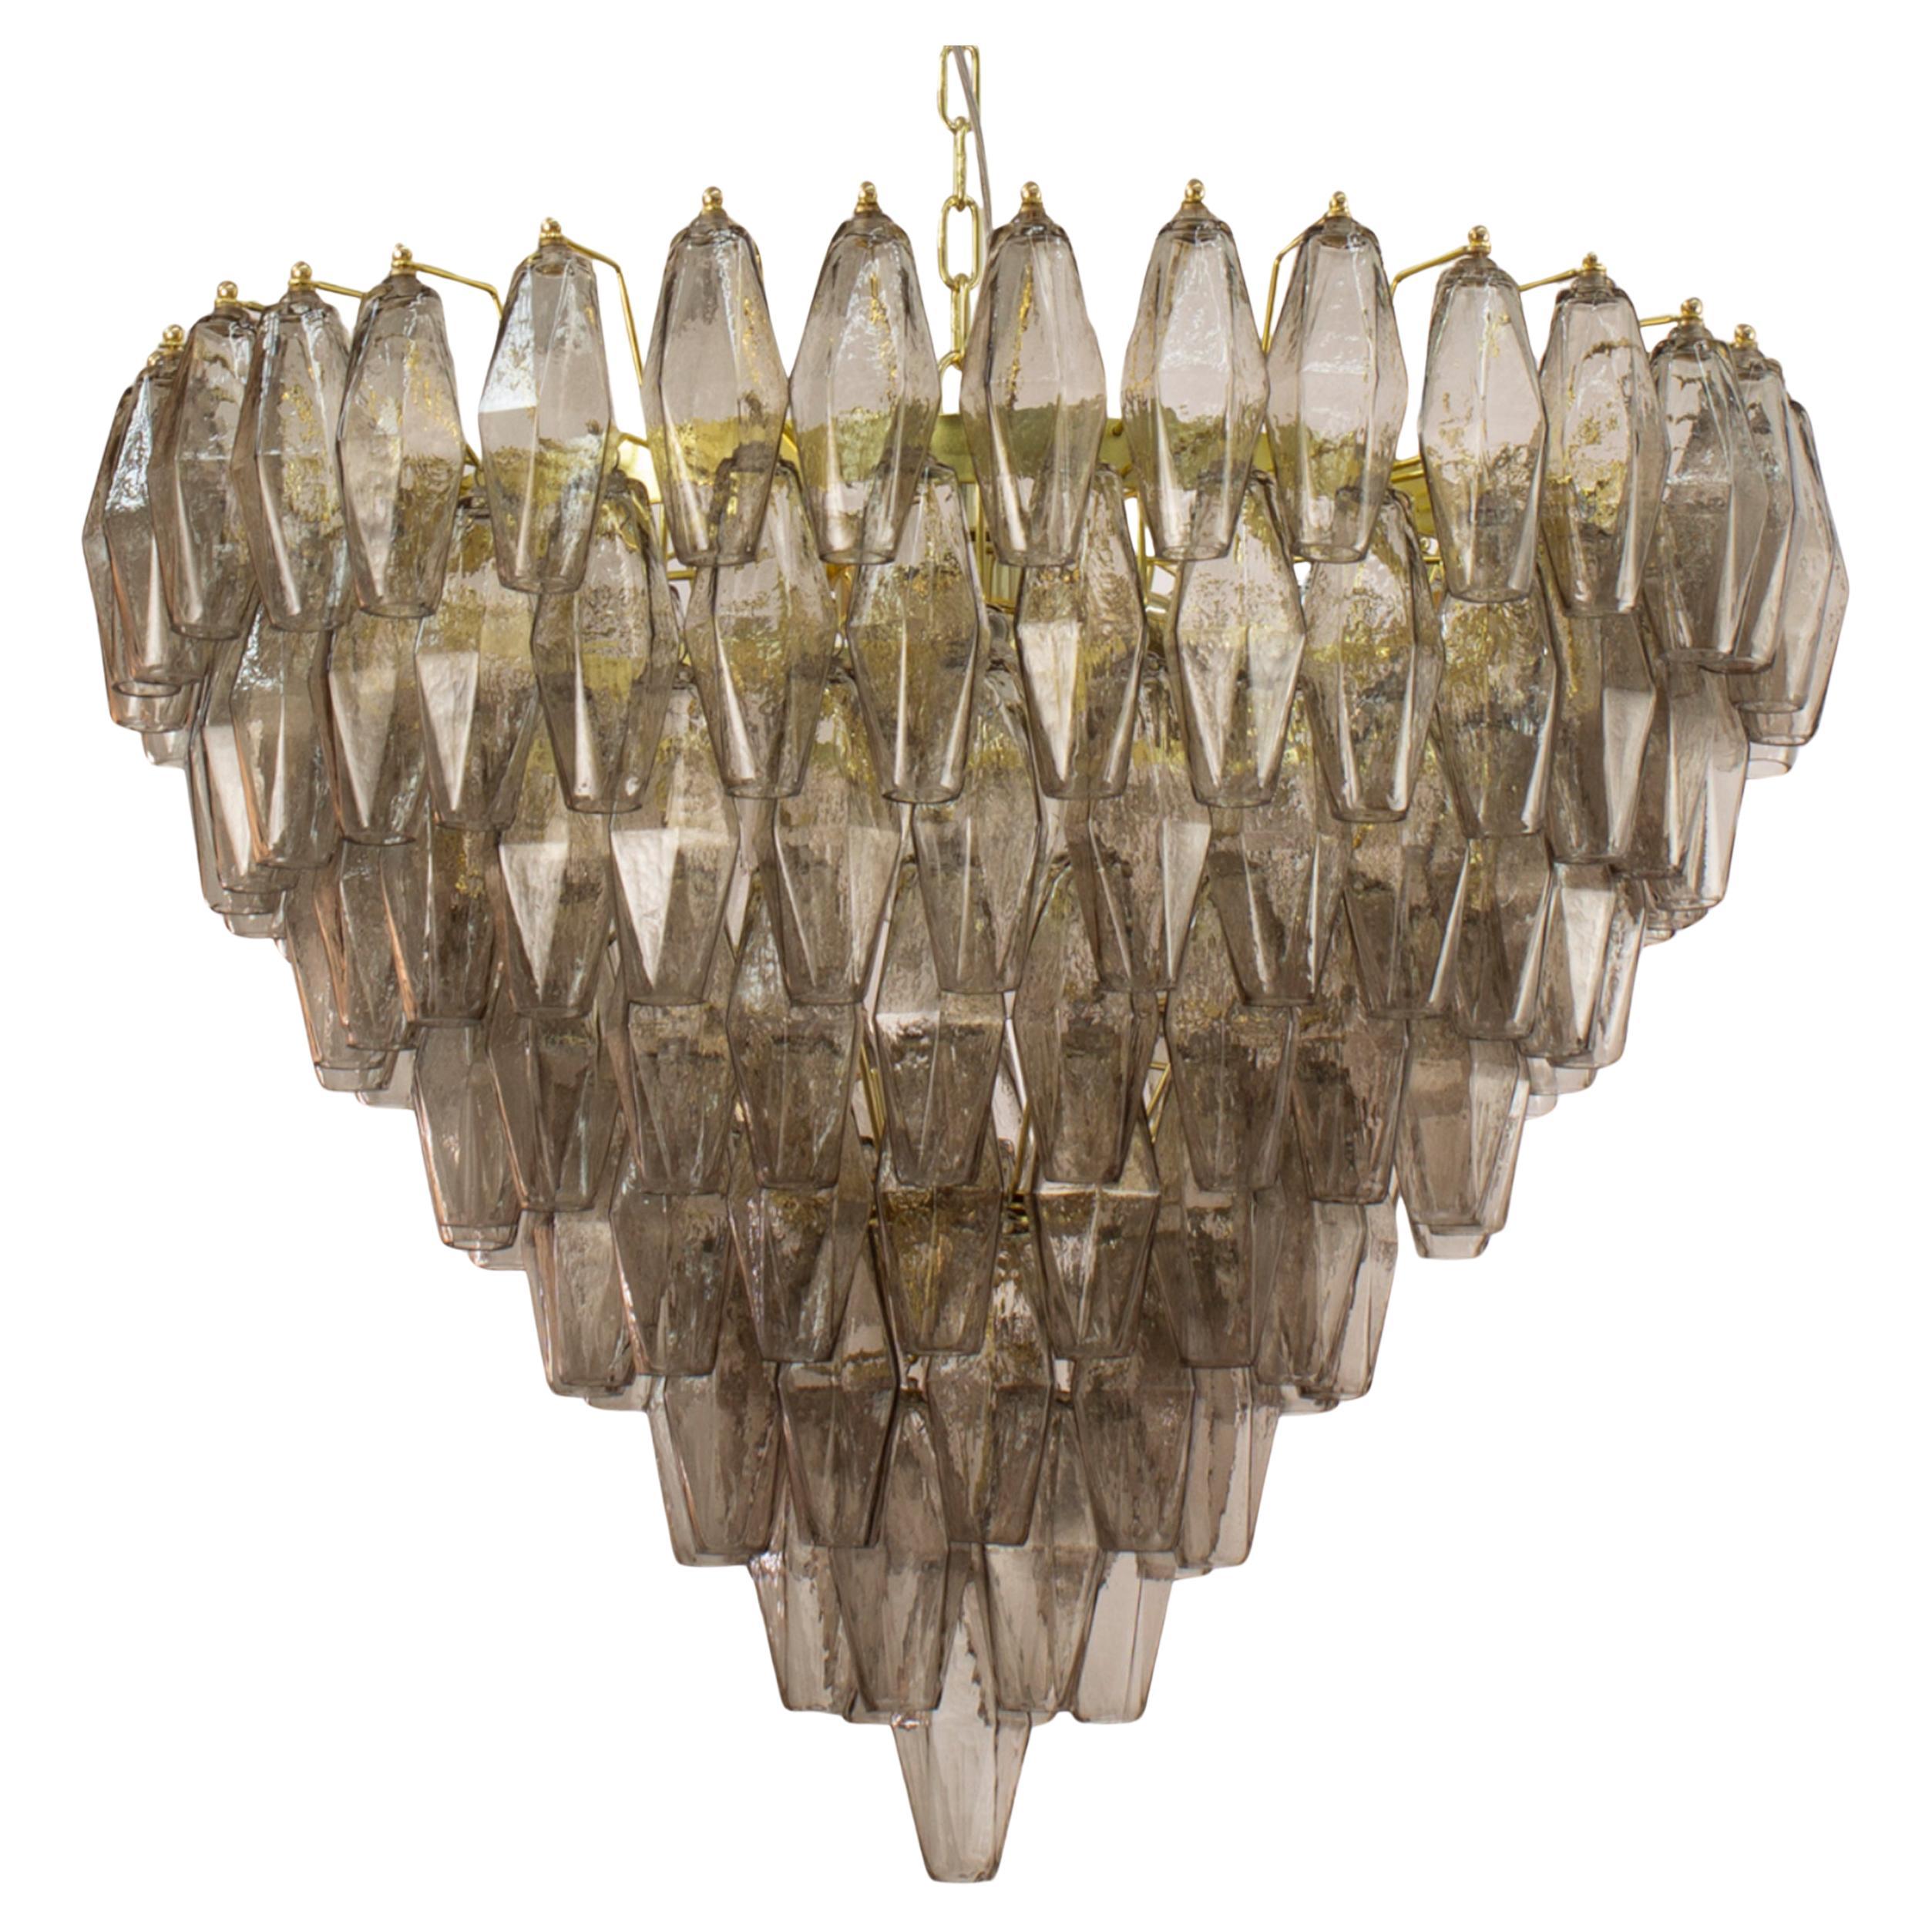 Lampe poliedri colore fumè vetro di Murano ispirato al mid-century italiano